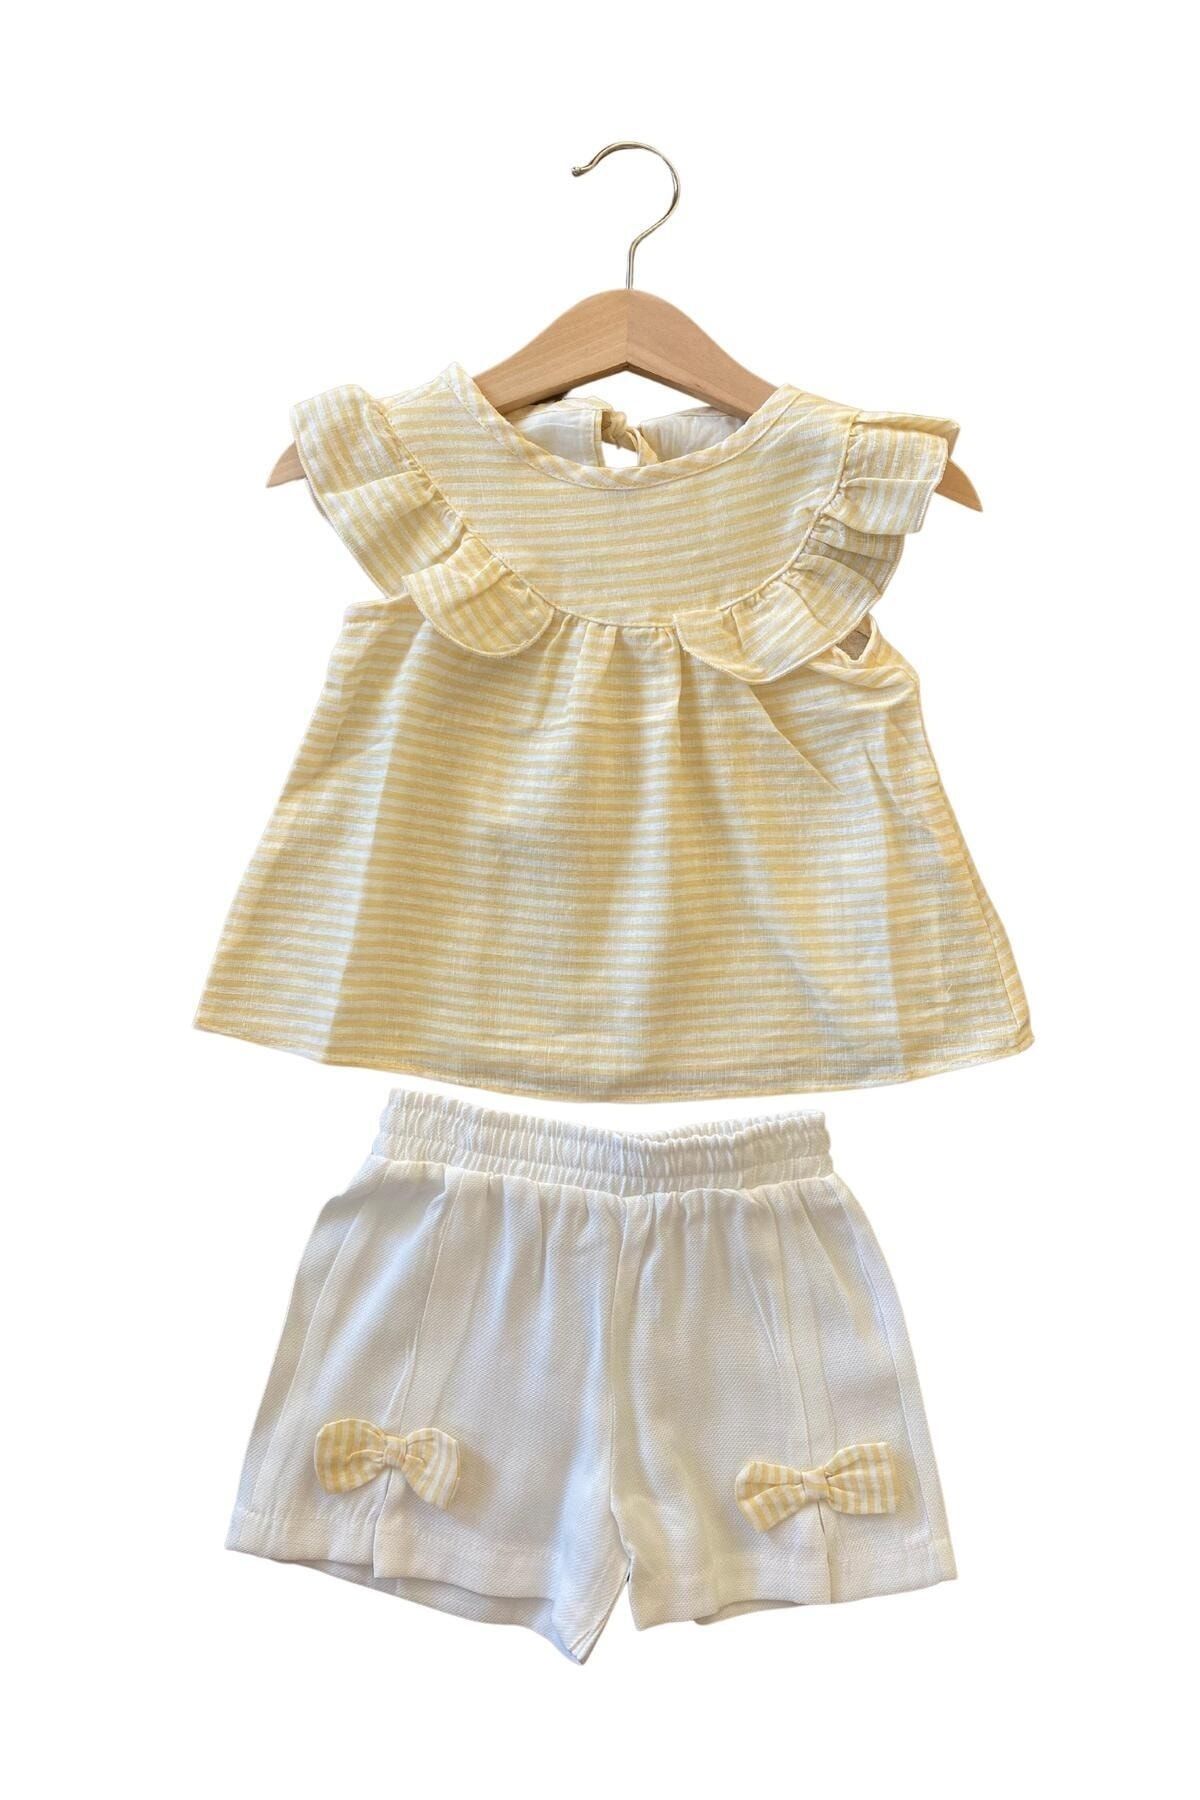 çikoby Sarı Çizgili Bluz + Beyaz Şortlu Kız Bebe Takımı